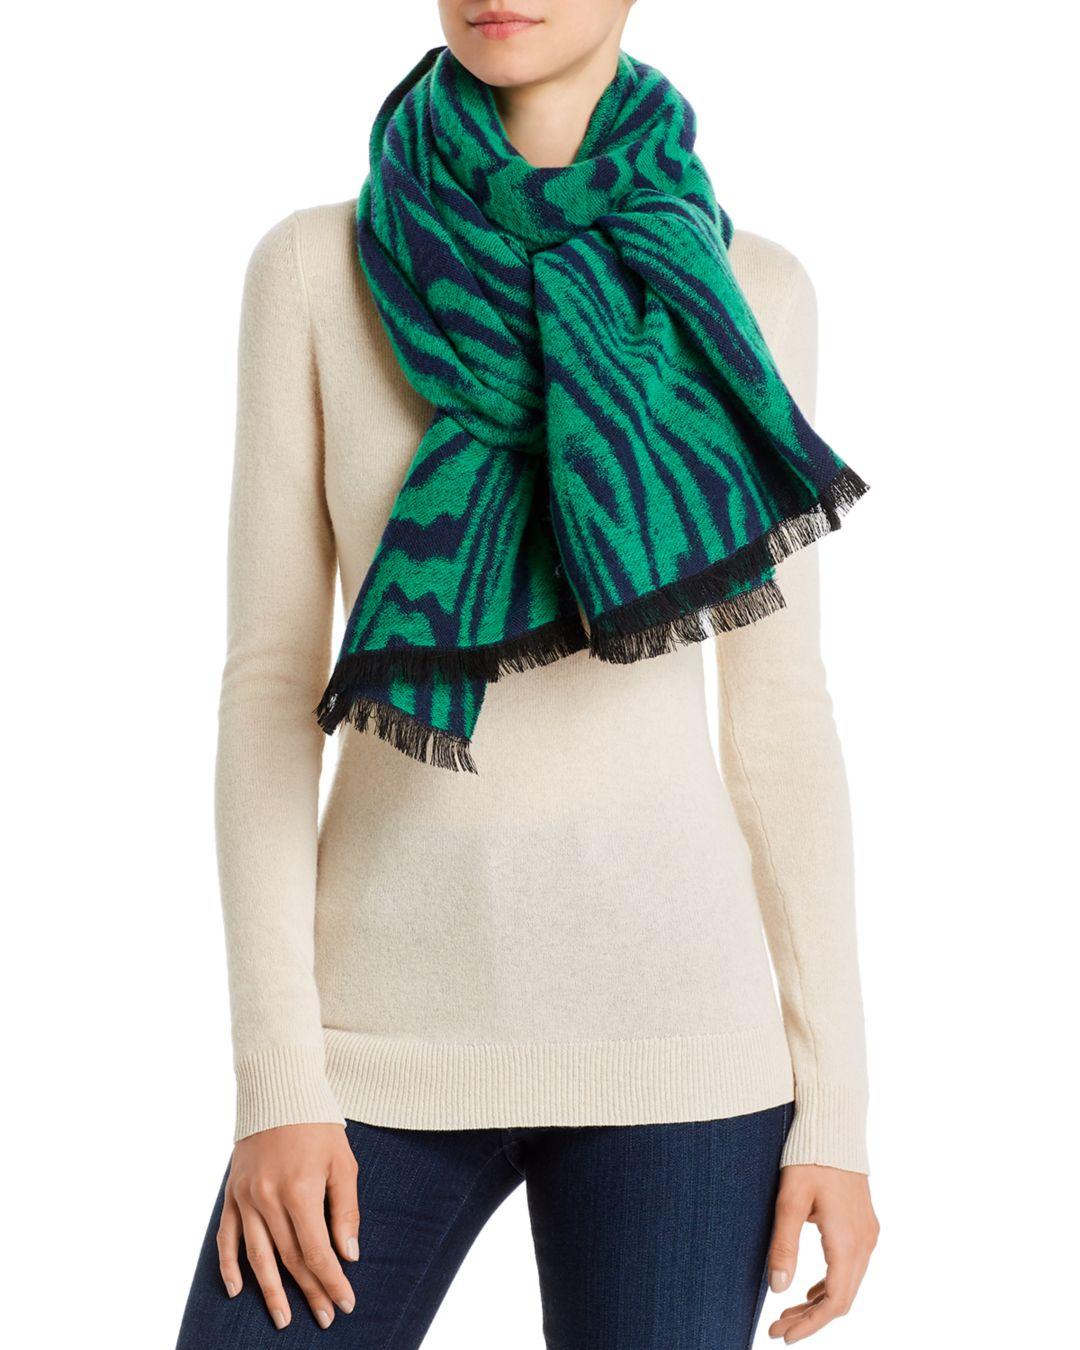 Valentina зеленый шарф. Черно зеленый шарф. Зеленый шарф на человеке. Хью Денси зеленый шарф. Красно зеленый шарф